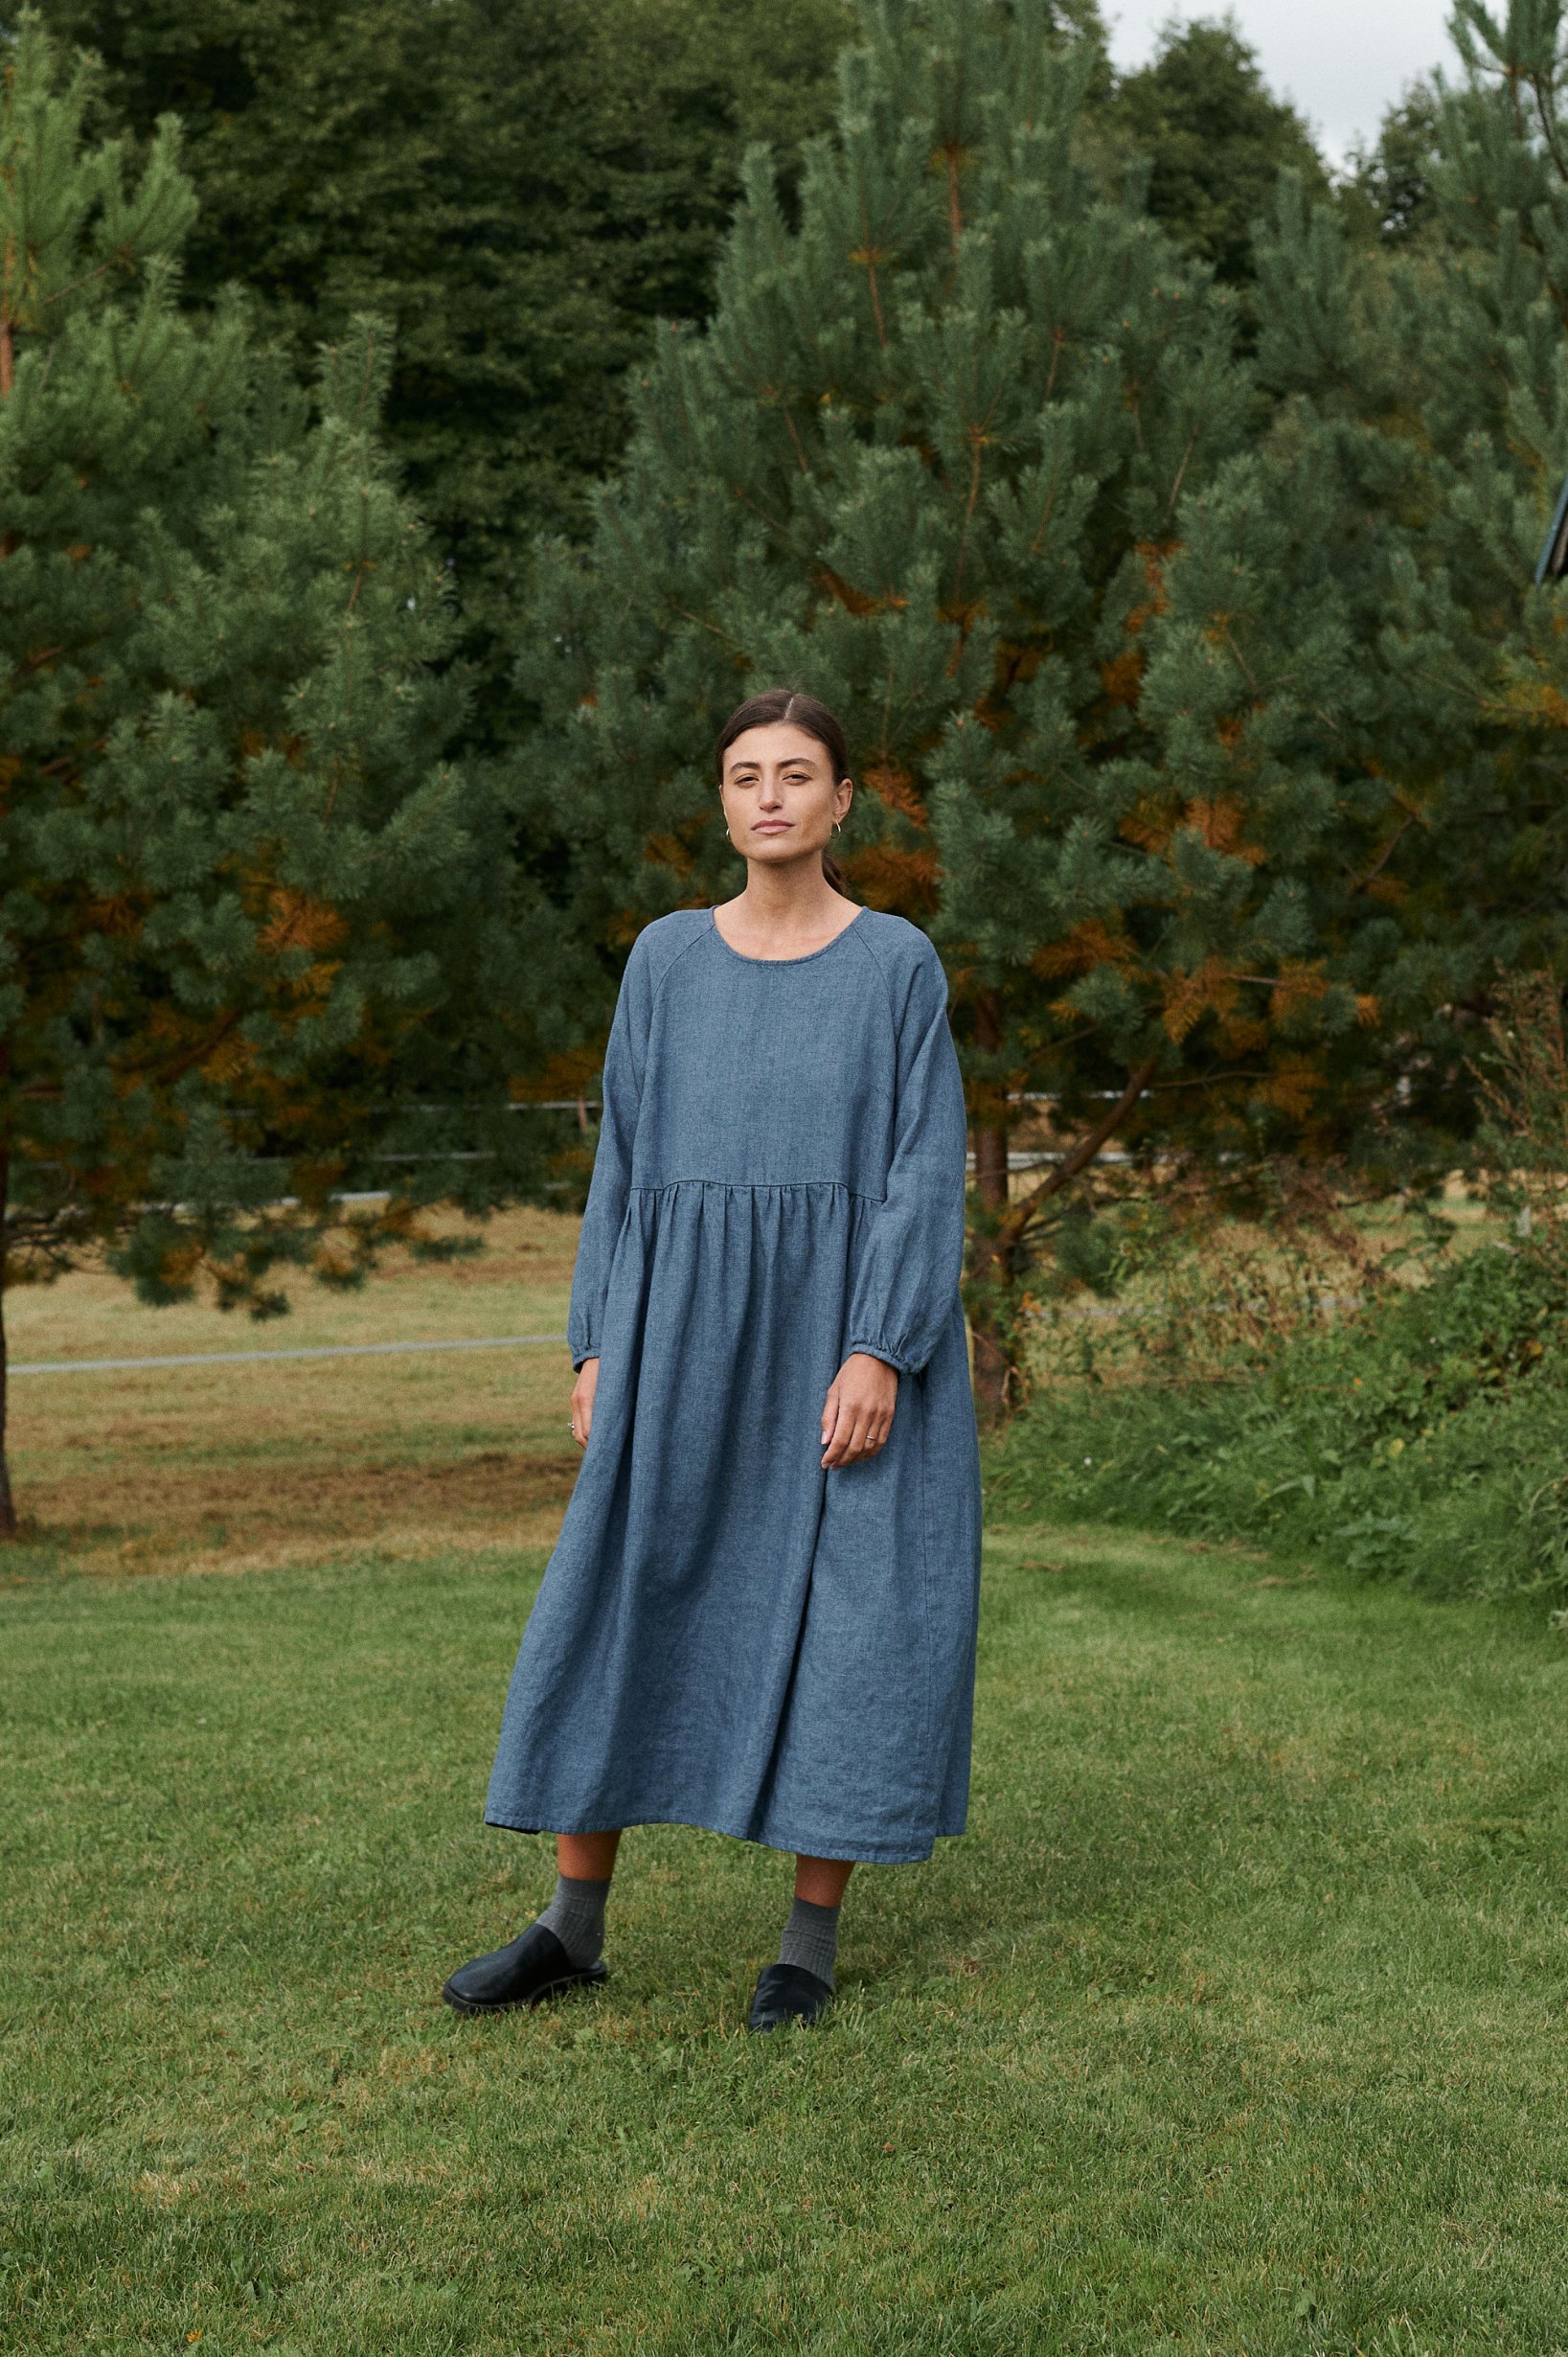 Wool linen blend dress on a model